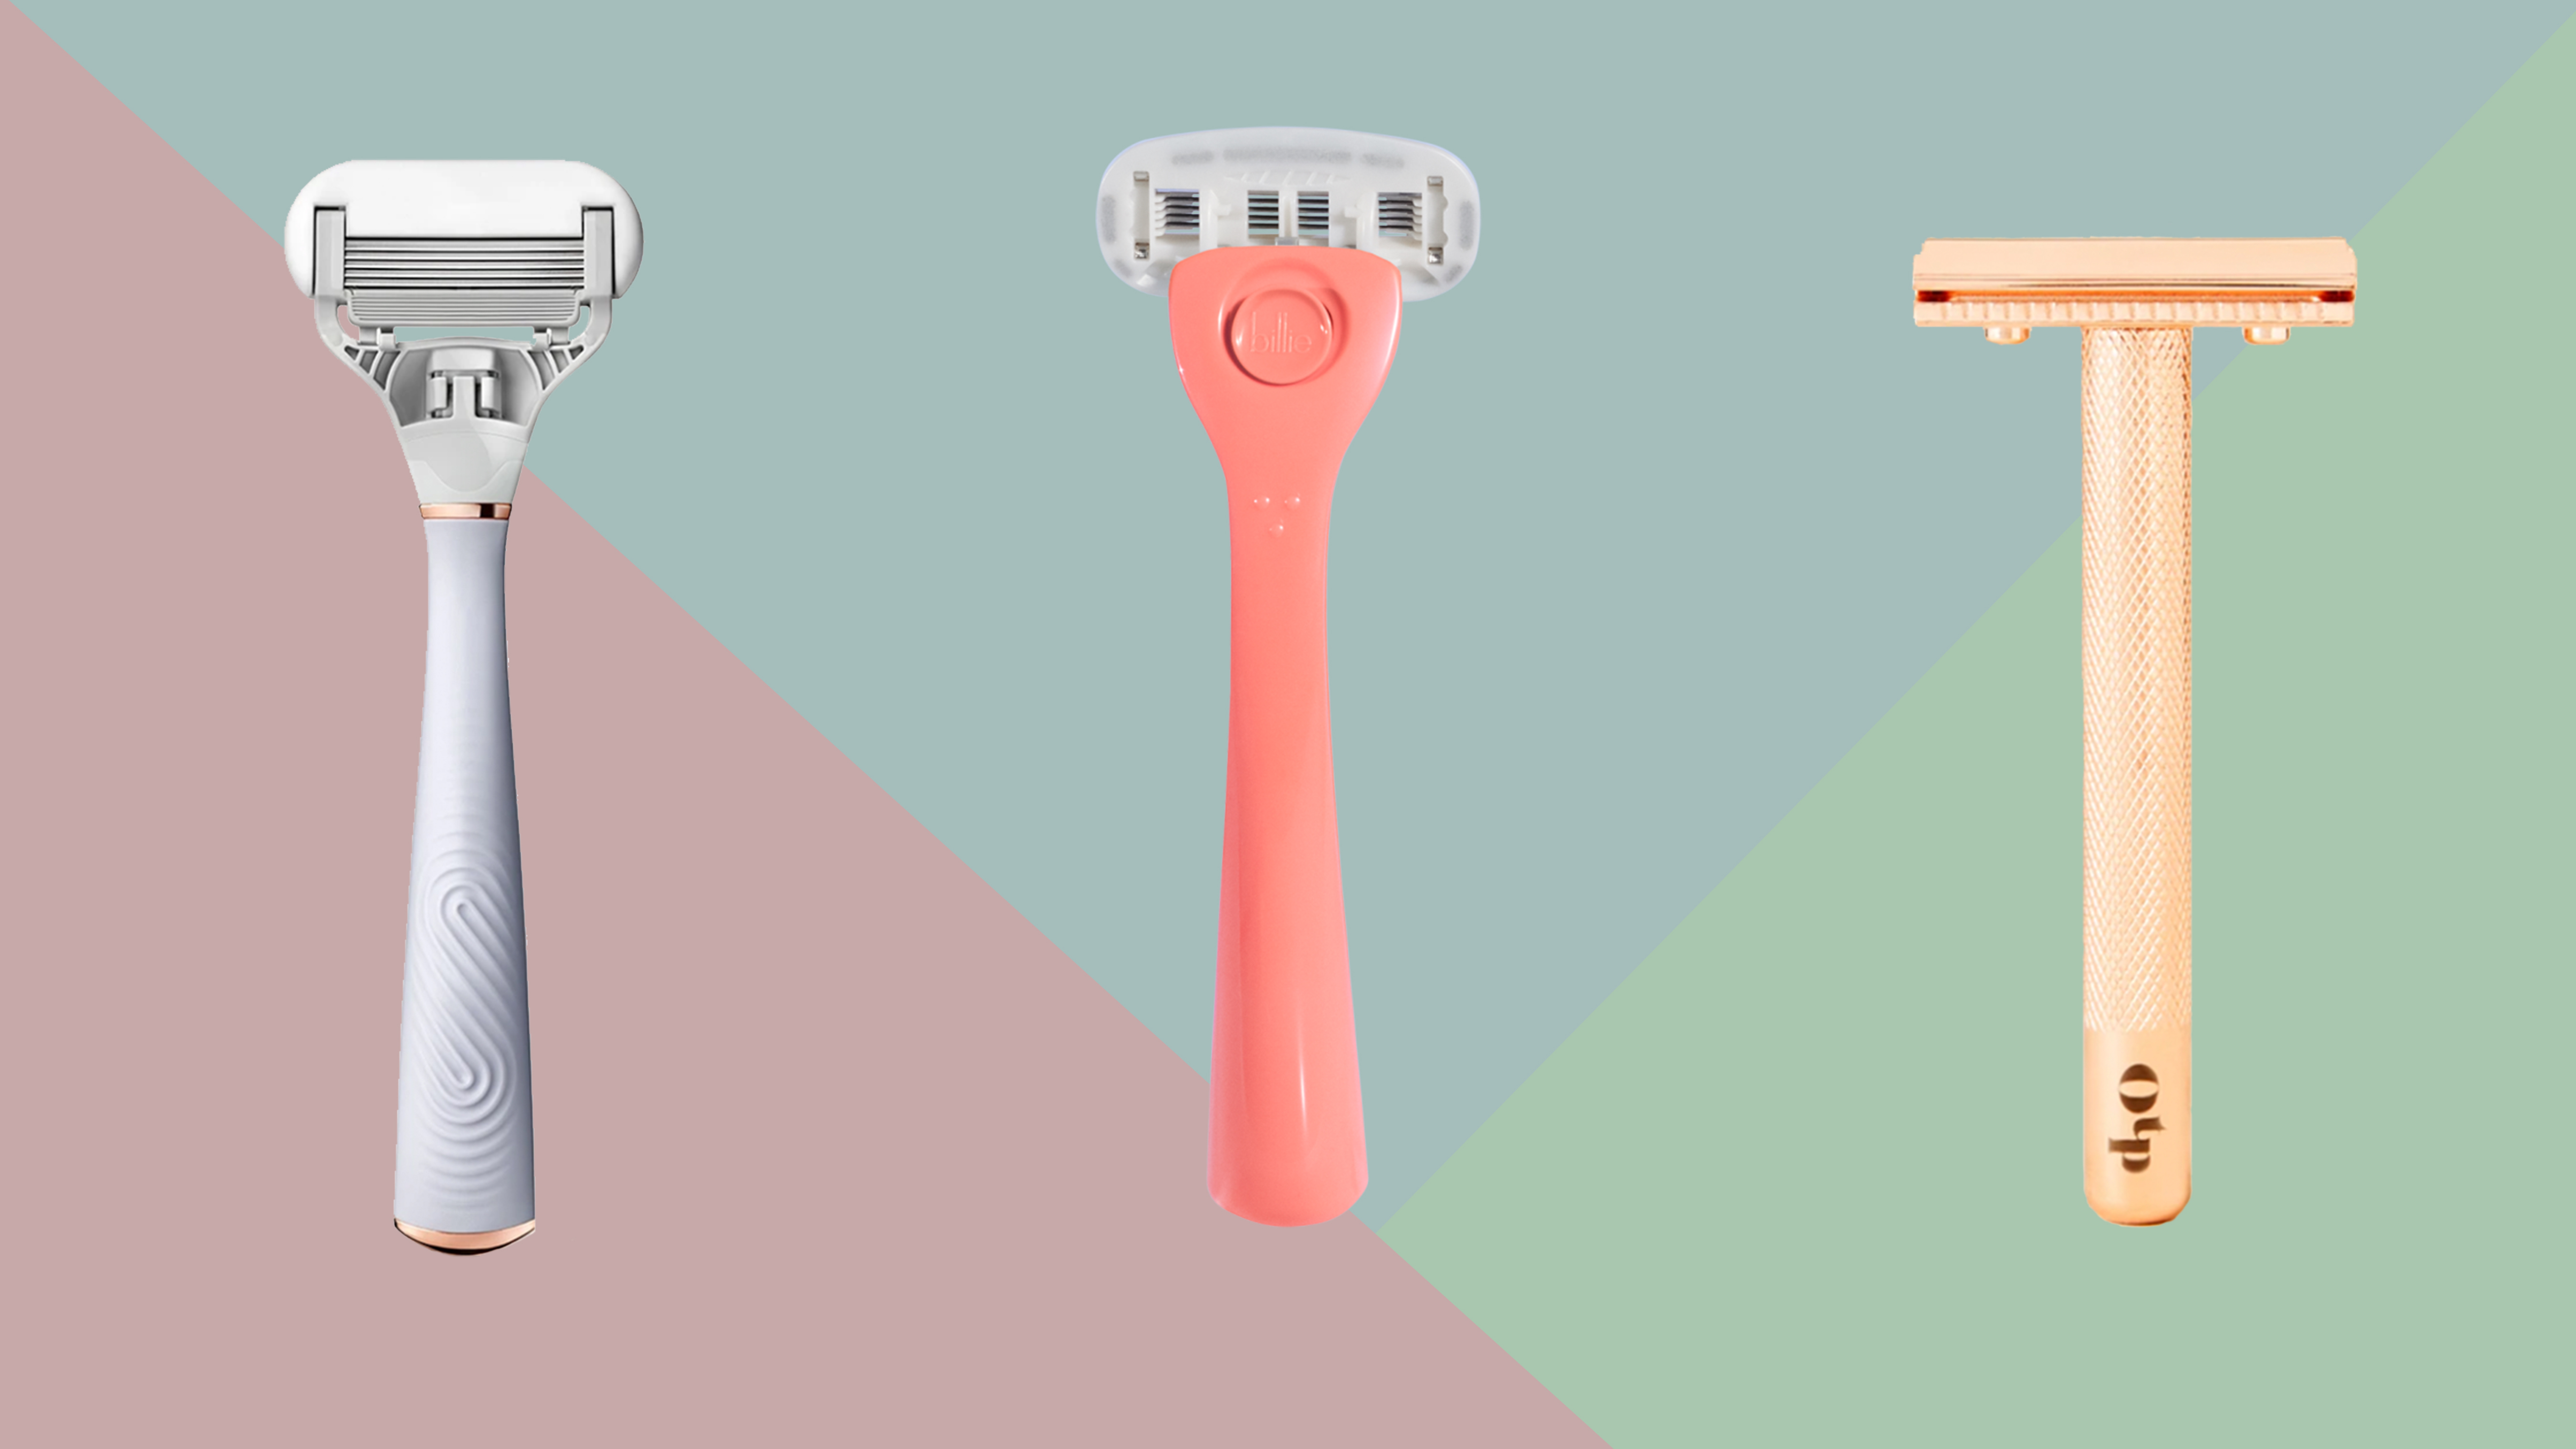 single blade razor for pubic area